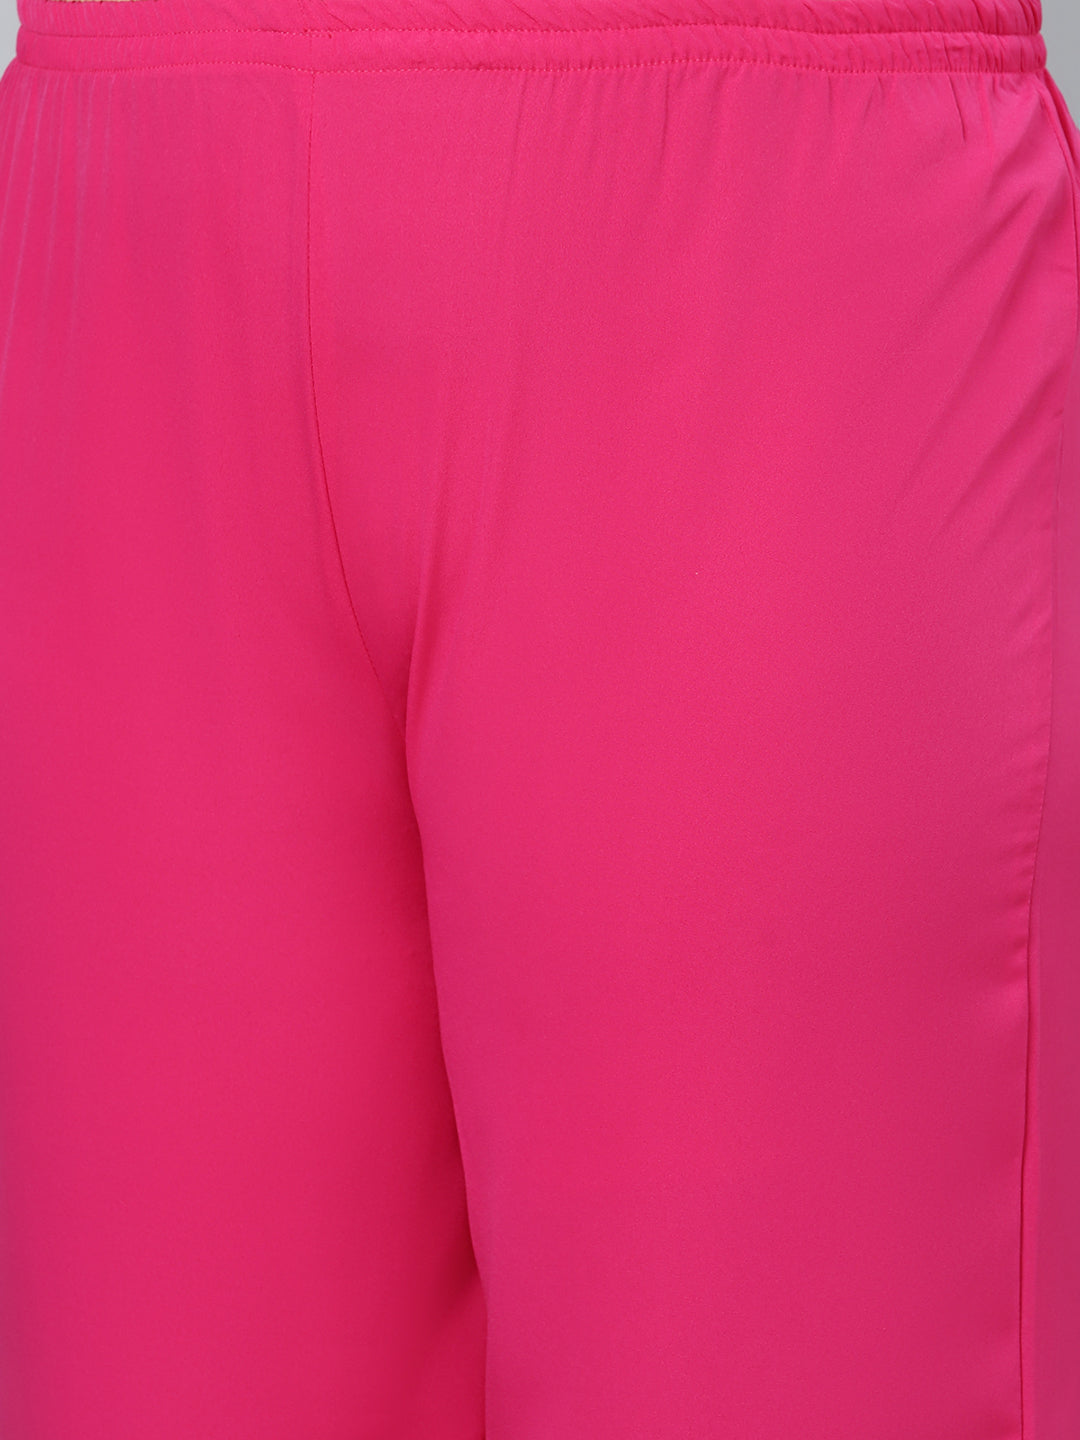 Women's Pink Crepe Straight Kurta With Palazzo by Ziyaa (2pcs Set)